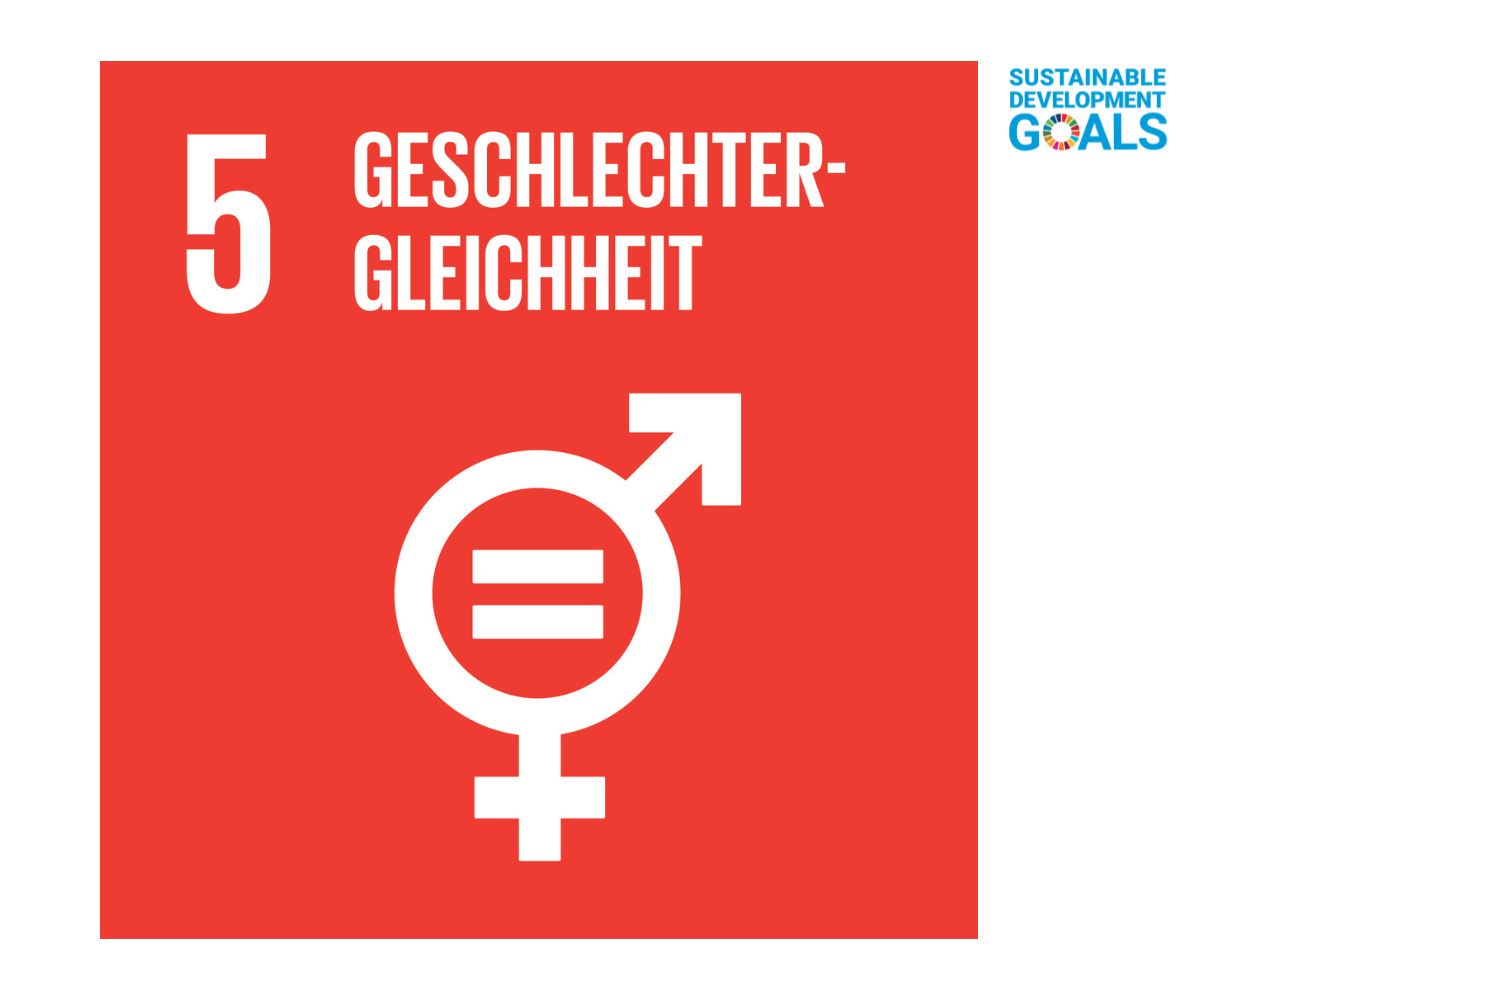 Geschlechtergleichheit - SDG 5